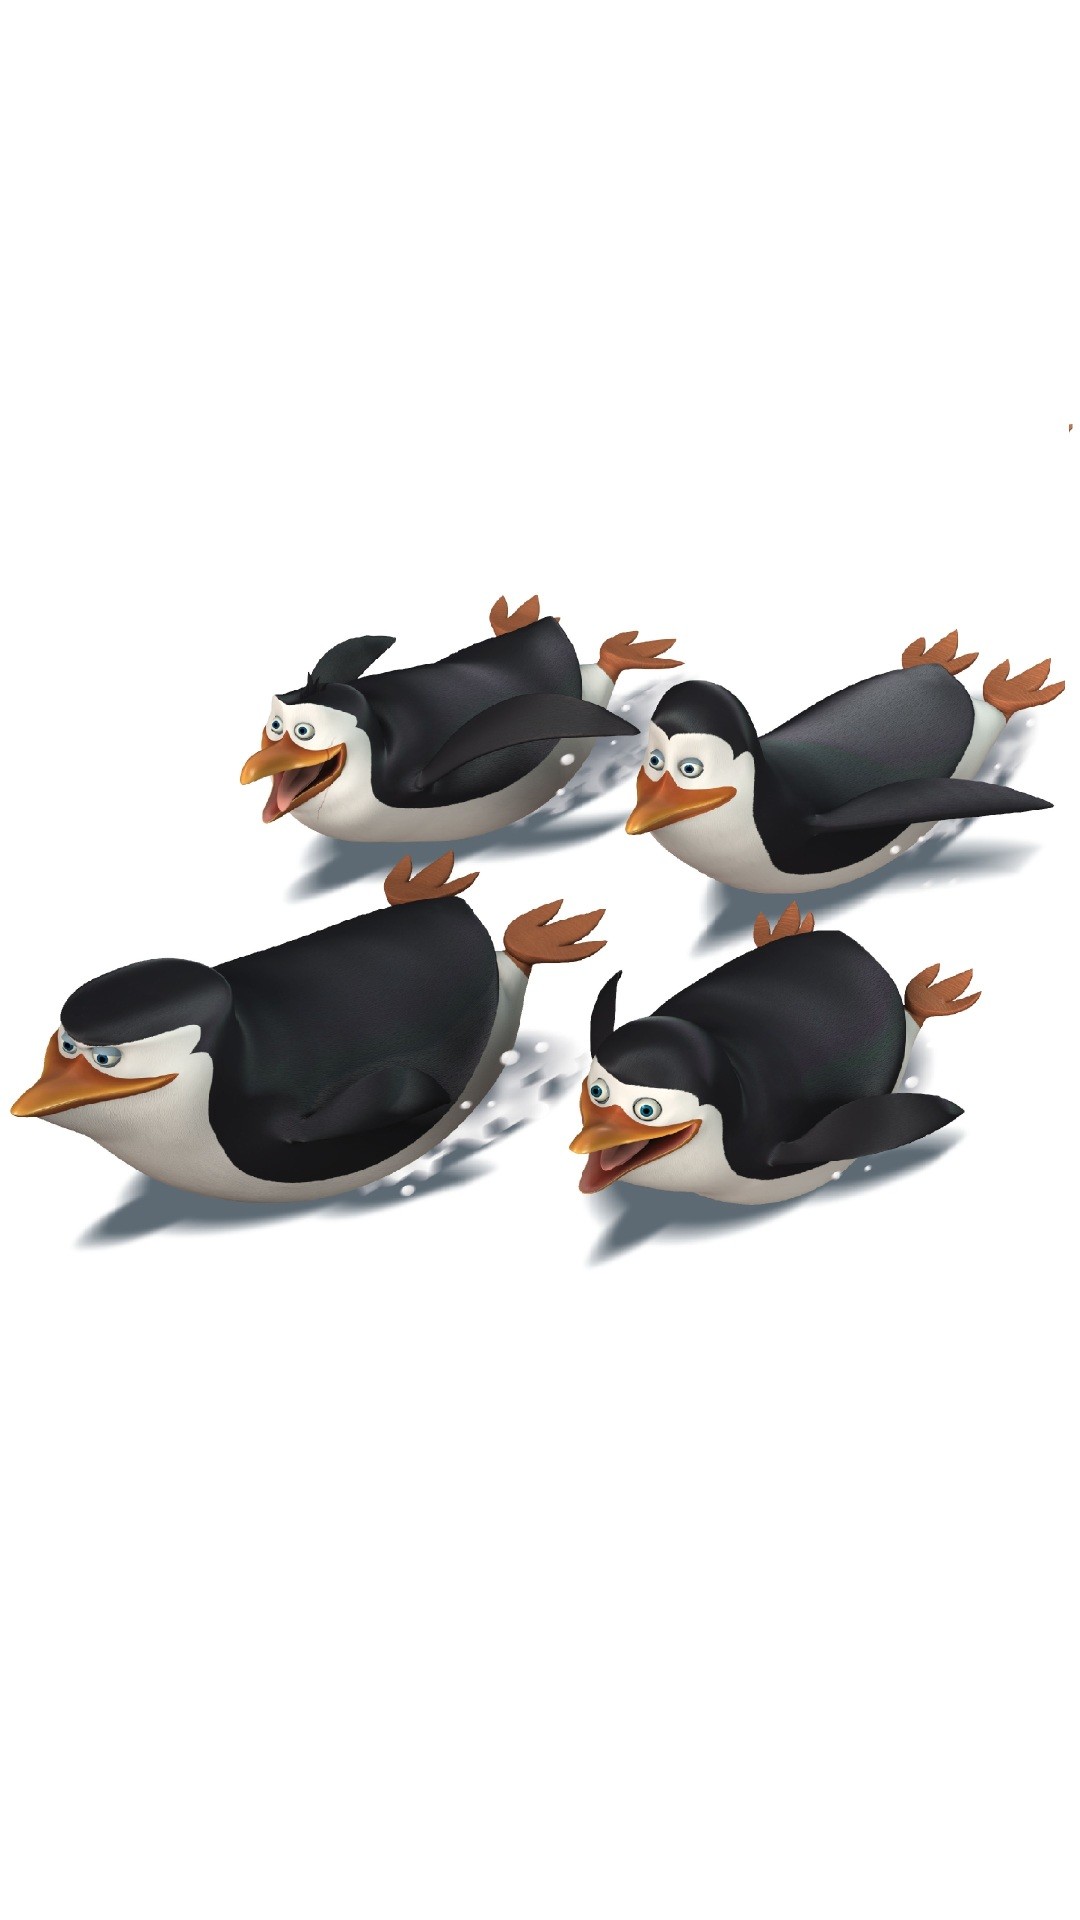 1080x1920 Madagascar 3 Penguins | Cartoon Wallpapers | Pinterest | Cartoon wallpaper  and Hd wallpaper